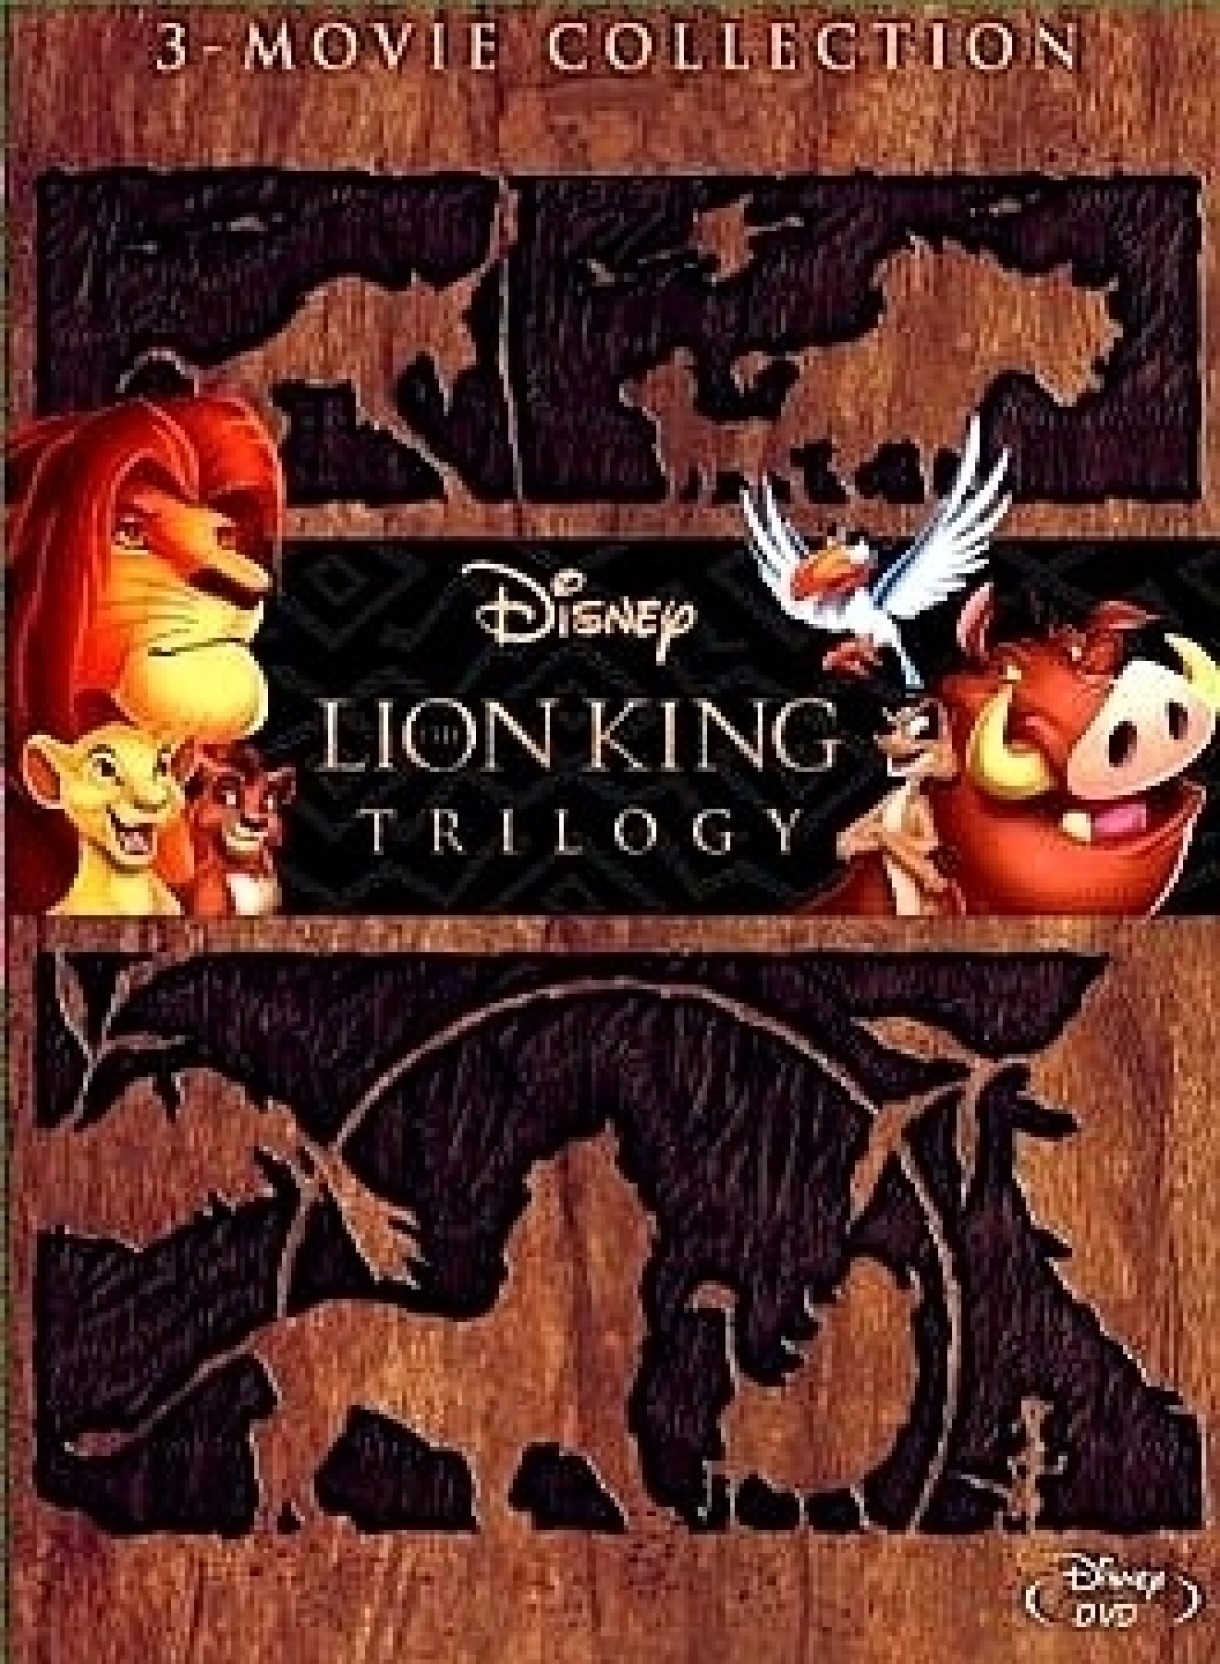 Lion king trilogy